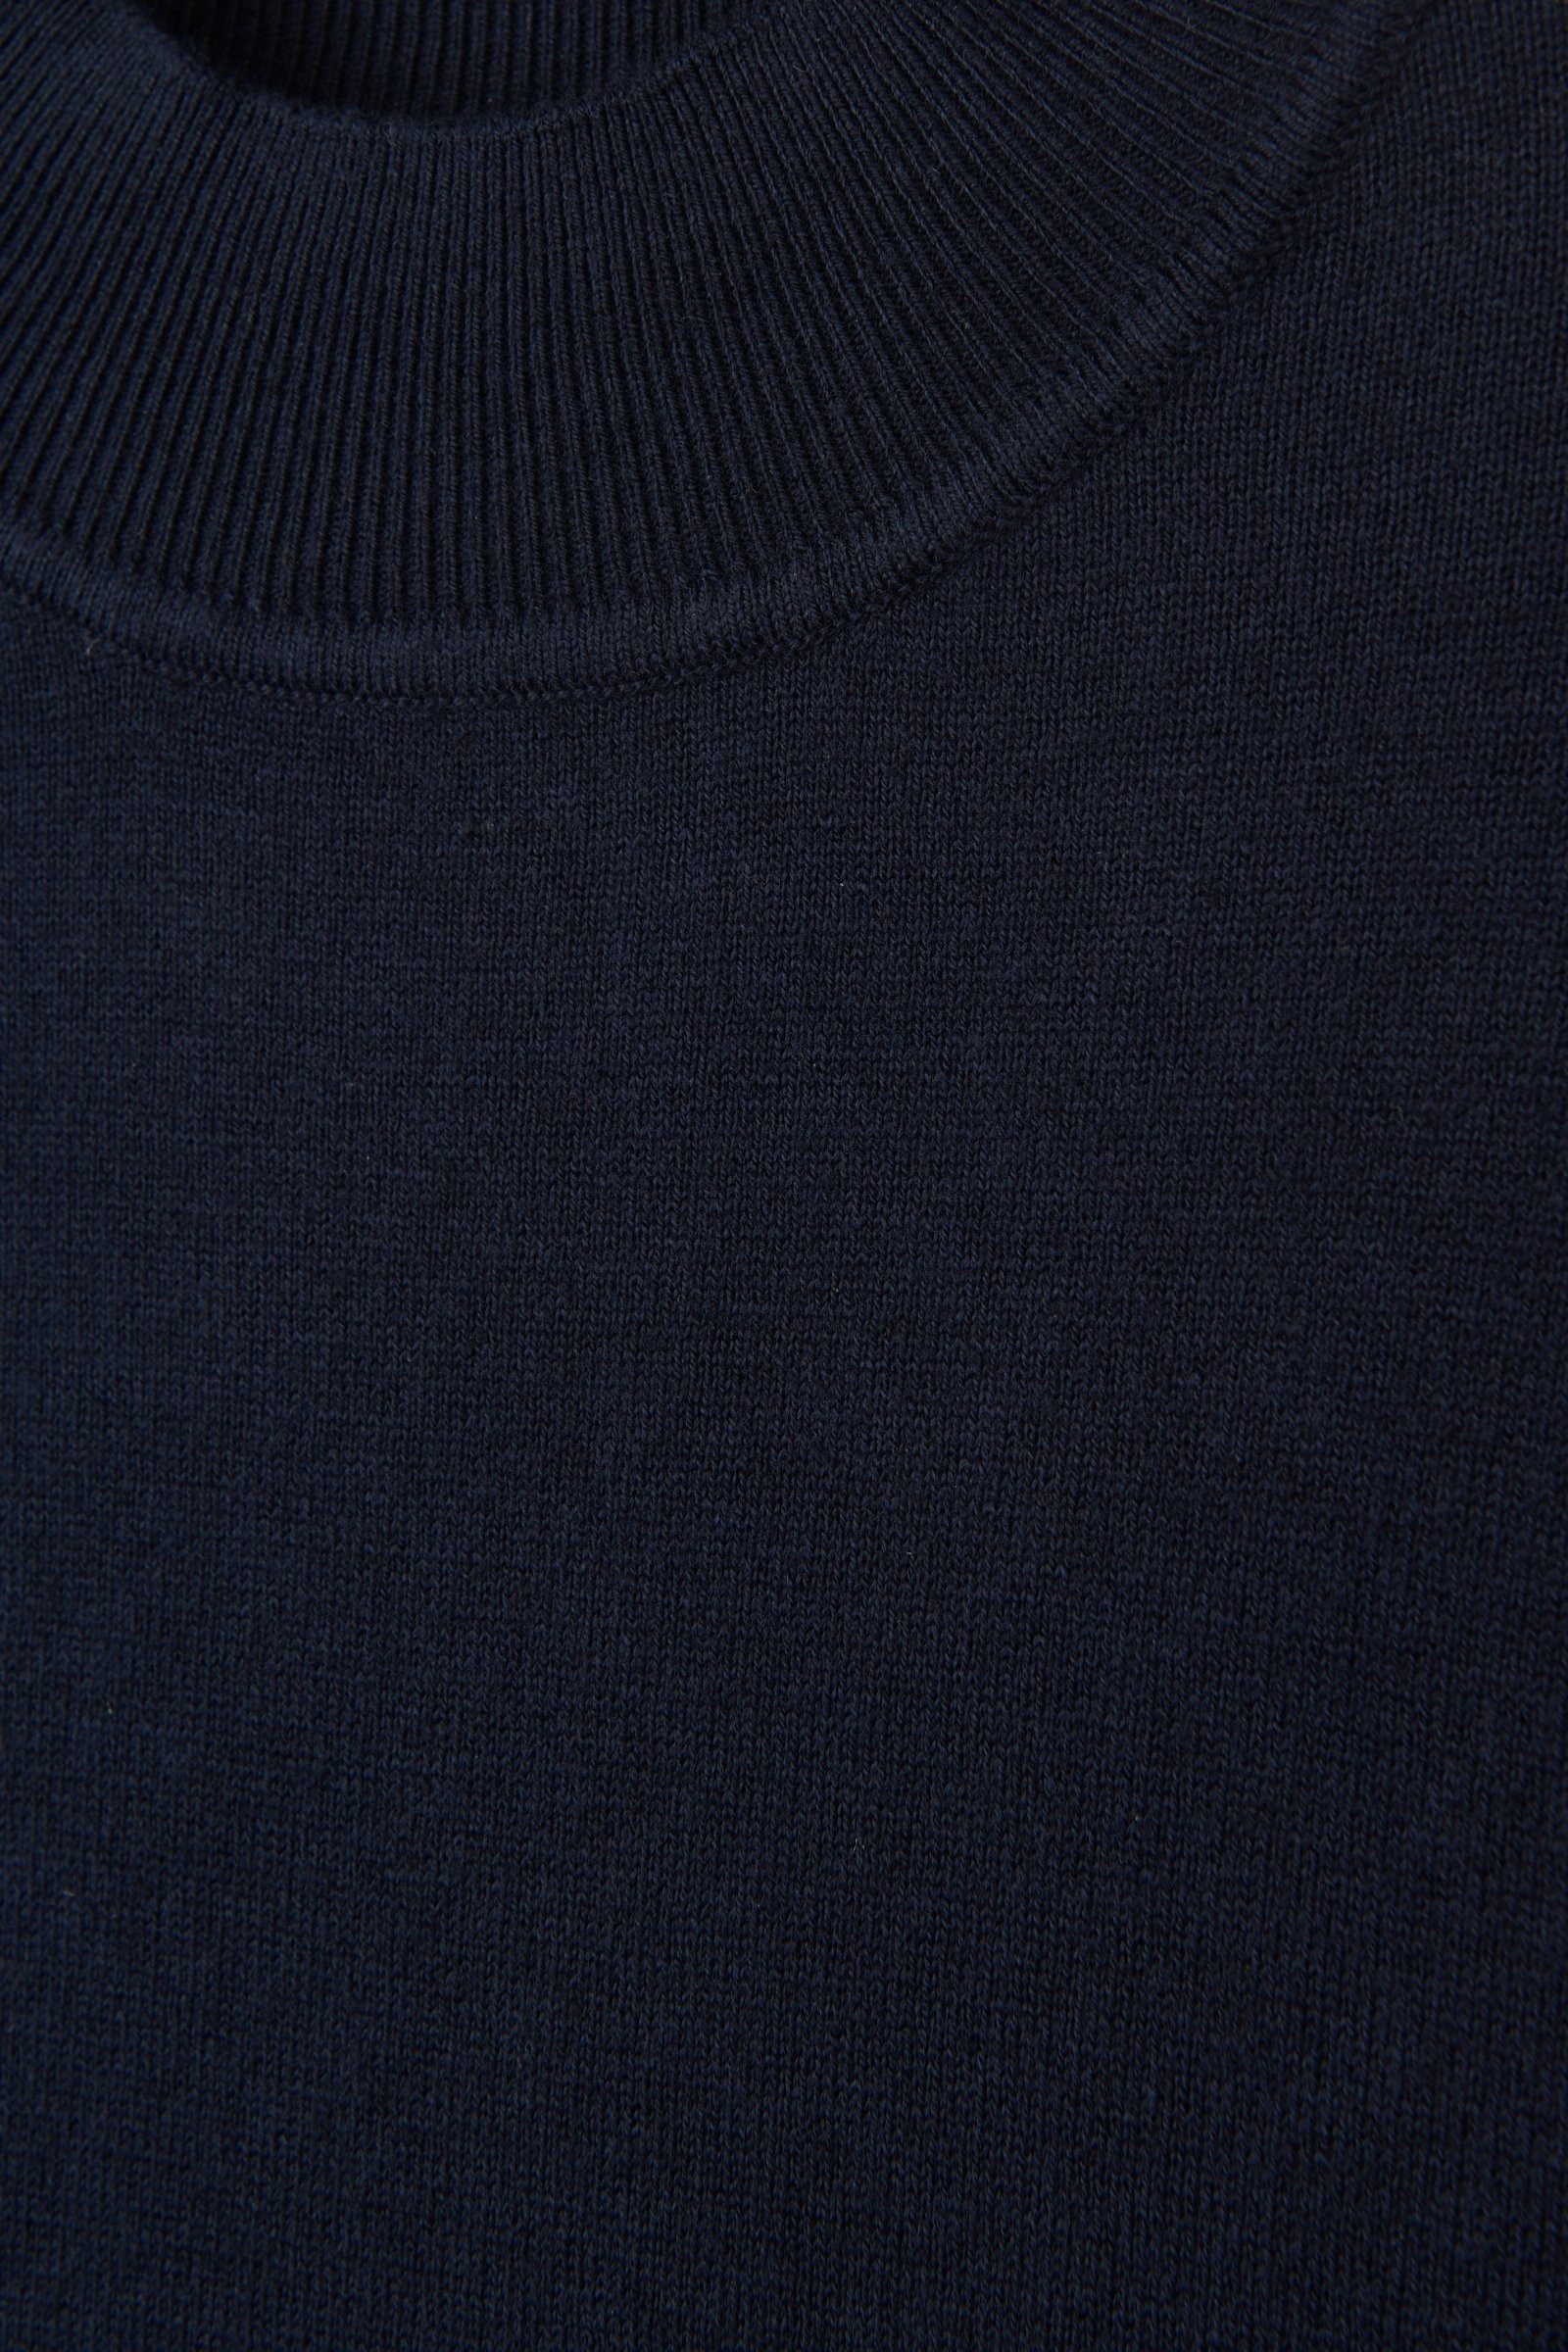 CKS - MATCHA - pullover - dark blue